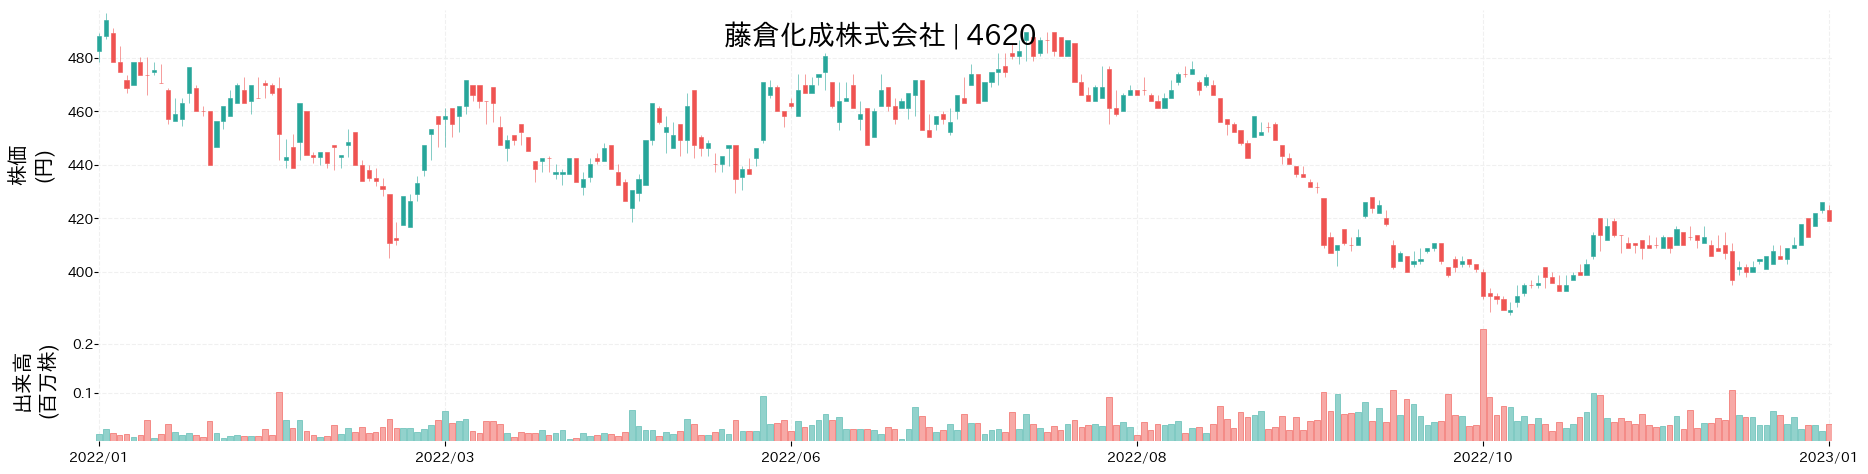 藤倉化成の株価推移(2022)